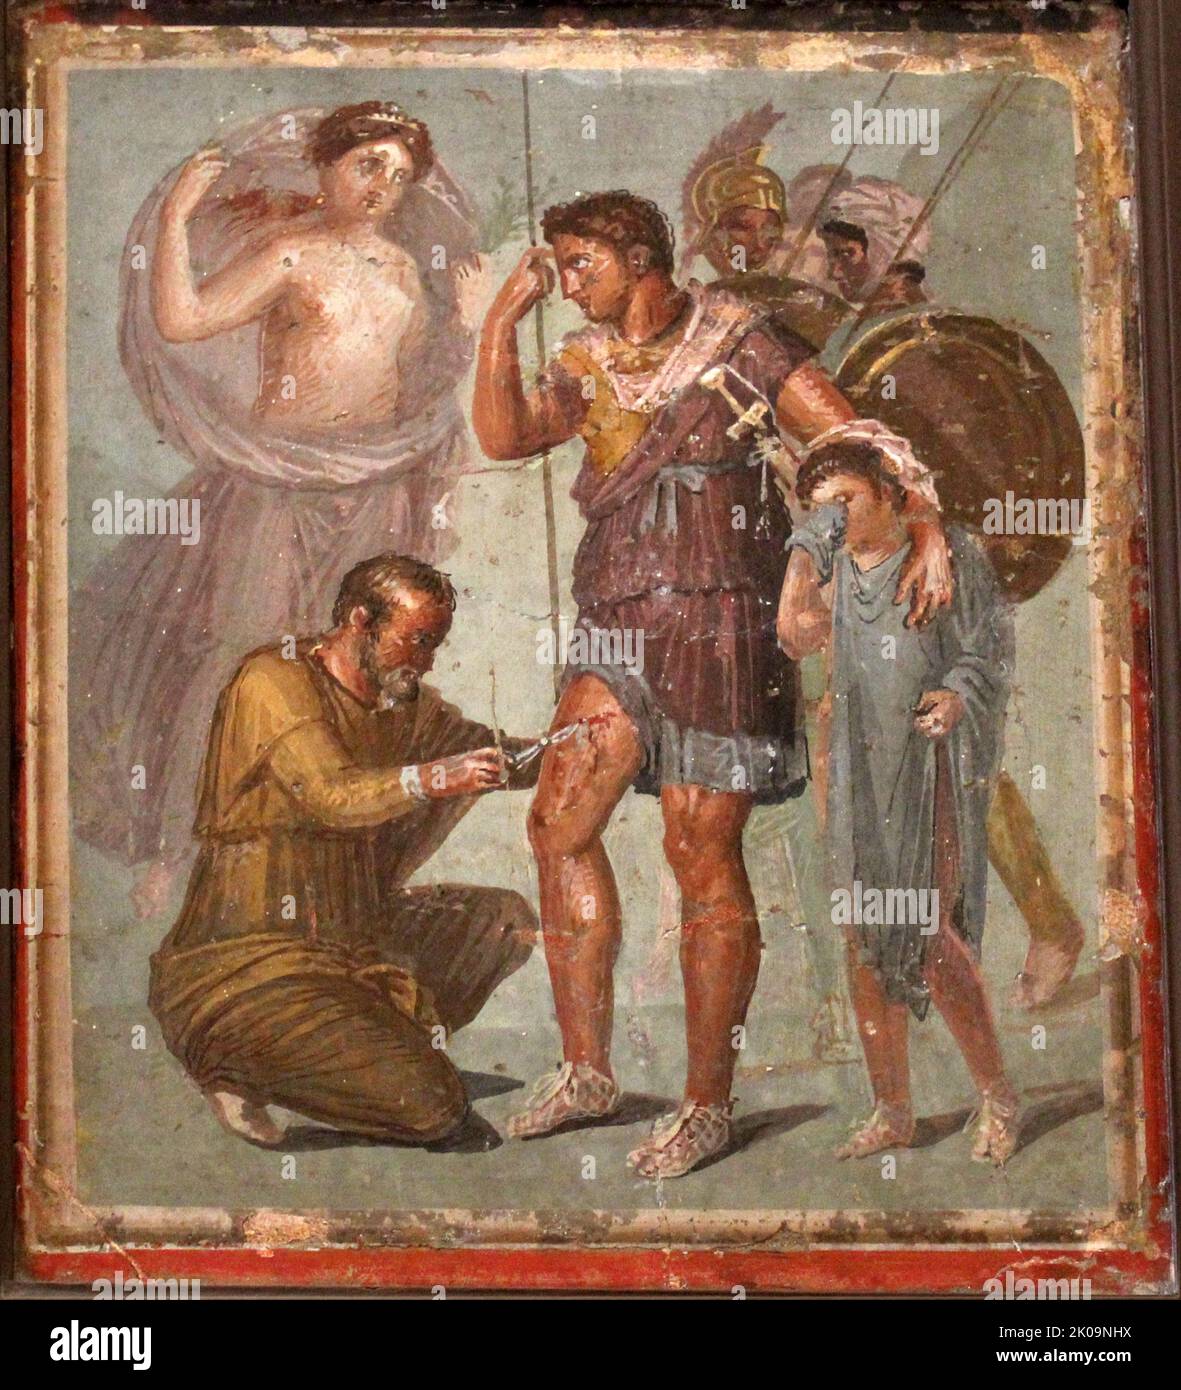 Römisches Fresko, auf dem Aeneas verwundet dargestellt wird, als er seine Mutter Aphrodite ansieht, weint sein Sohn Ascanius; ein Arzt behandelt seine Wunden von einem unbekannten Künstler, 45-79, 1. Jahrhundert n. Chr. Stockfoto